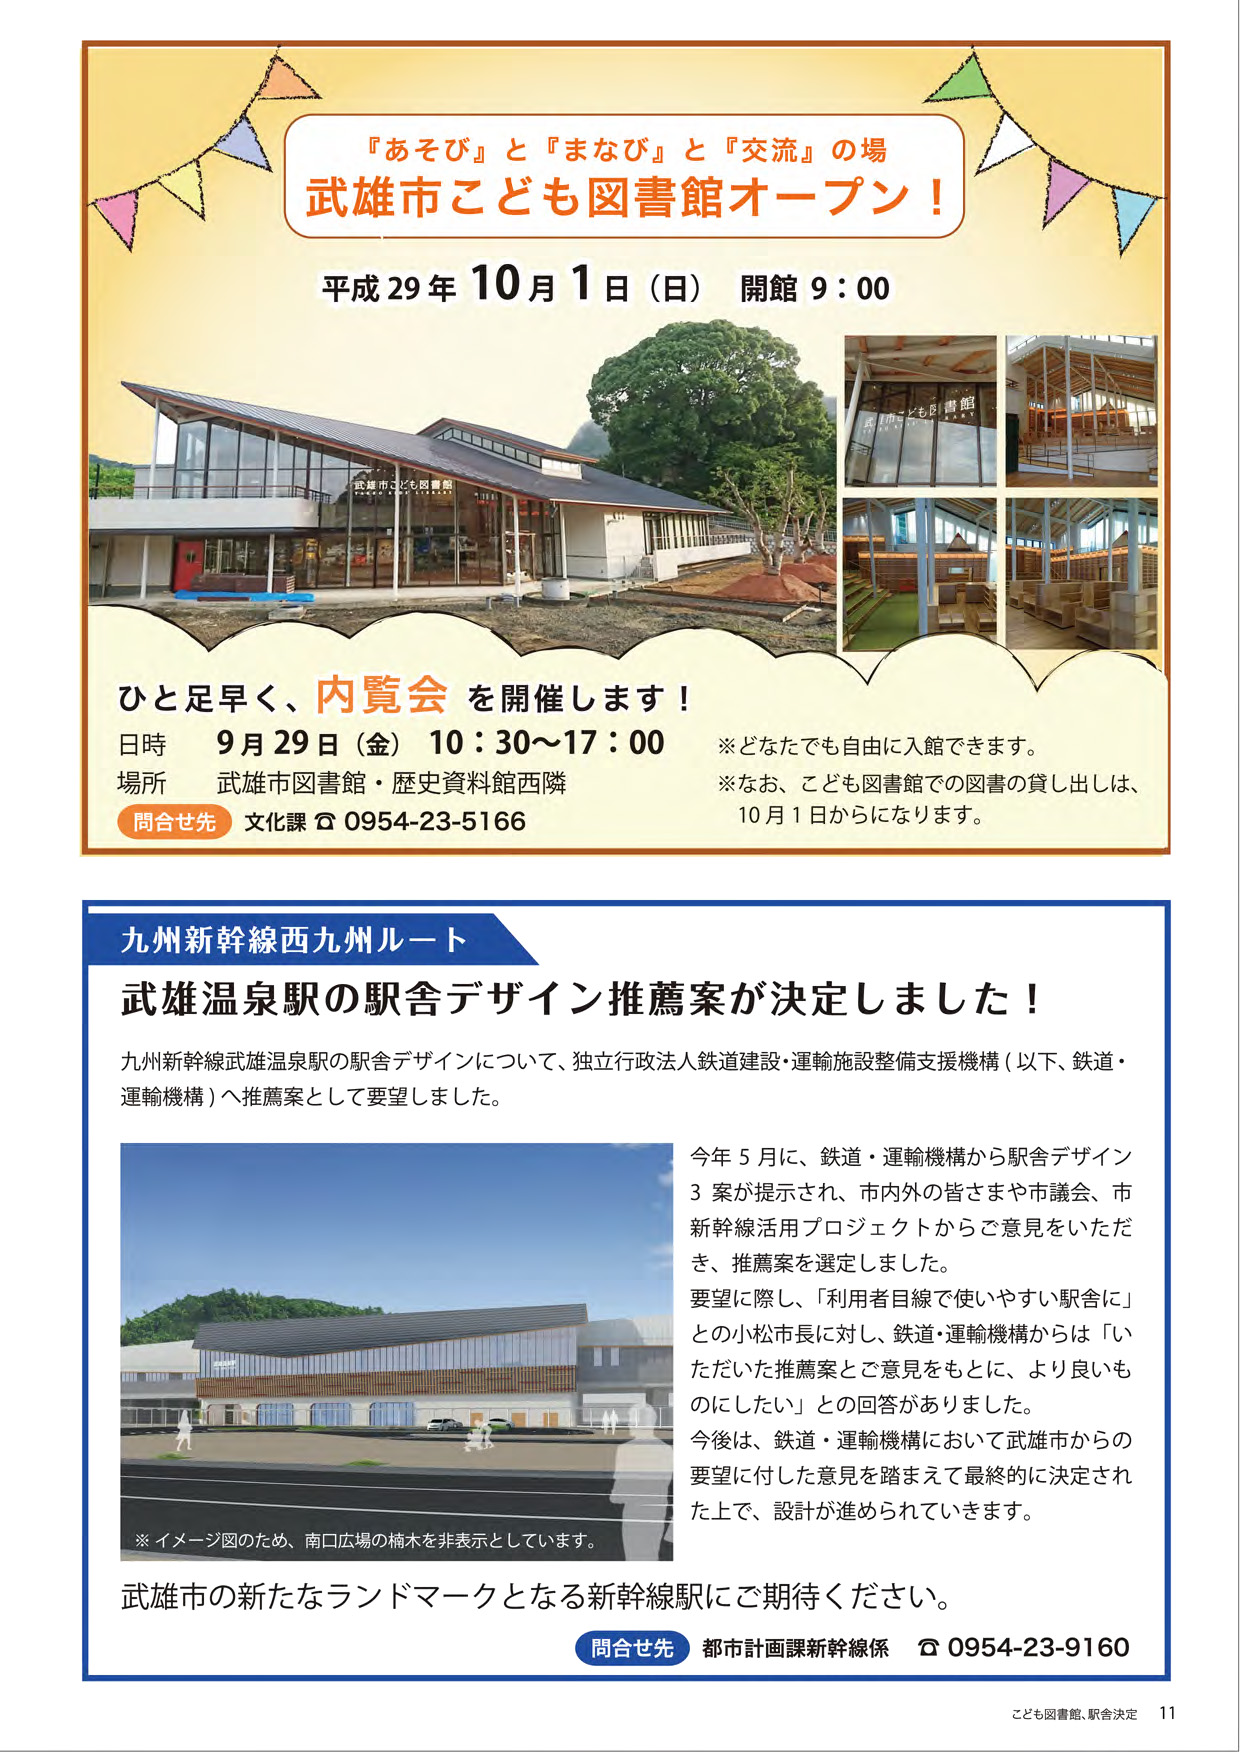 こども図書館オープン、武雄温泉駅舎デザイン決定